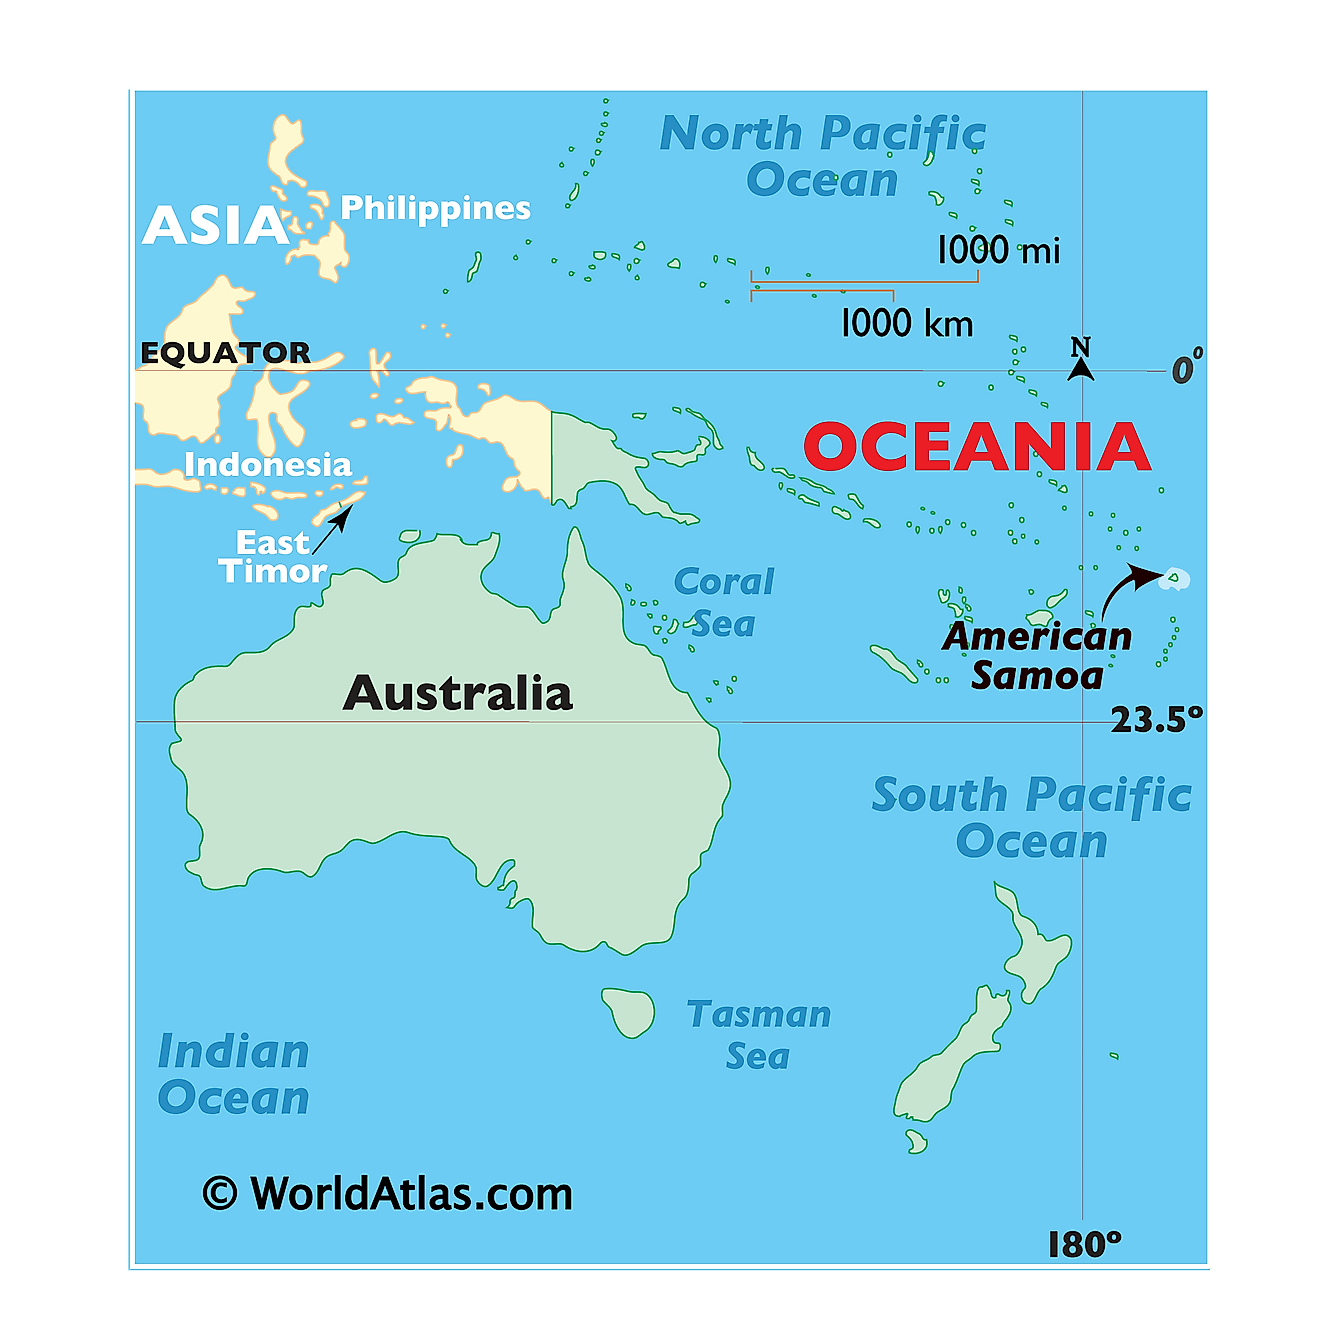 Where is American Samoa?